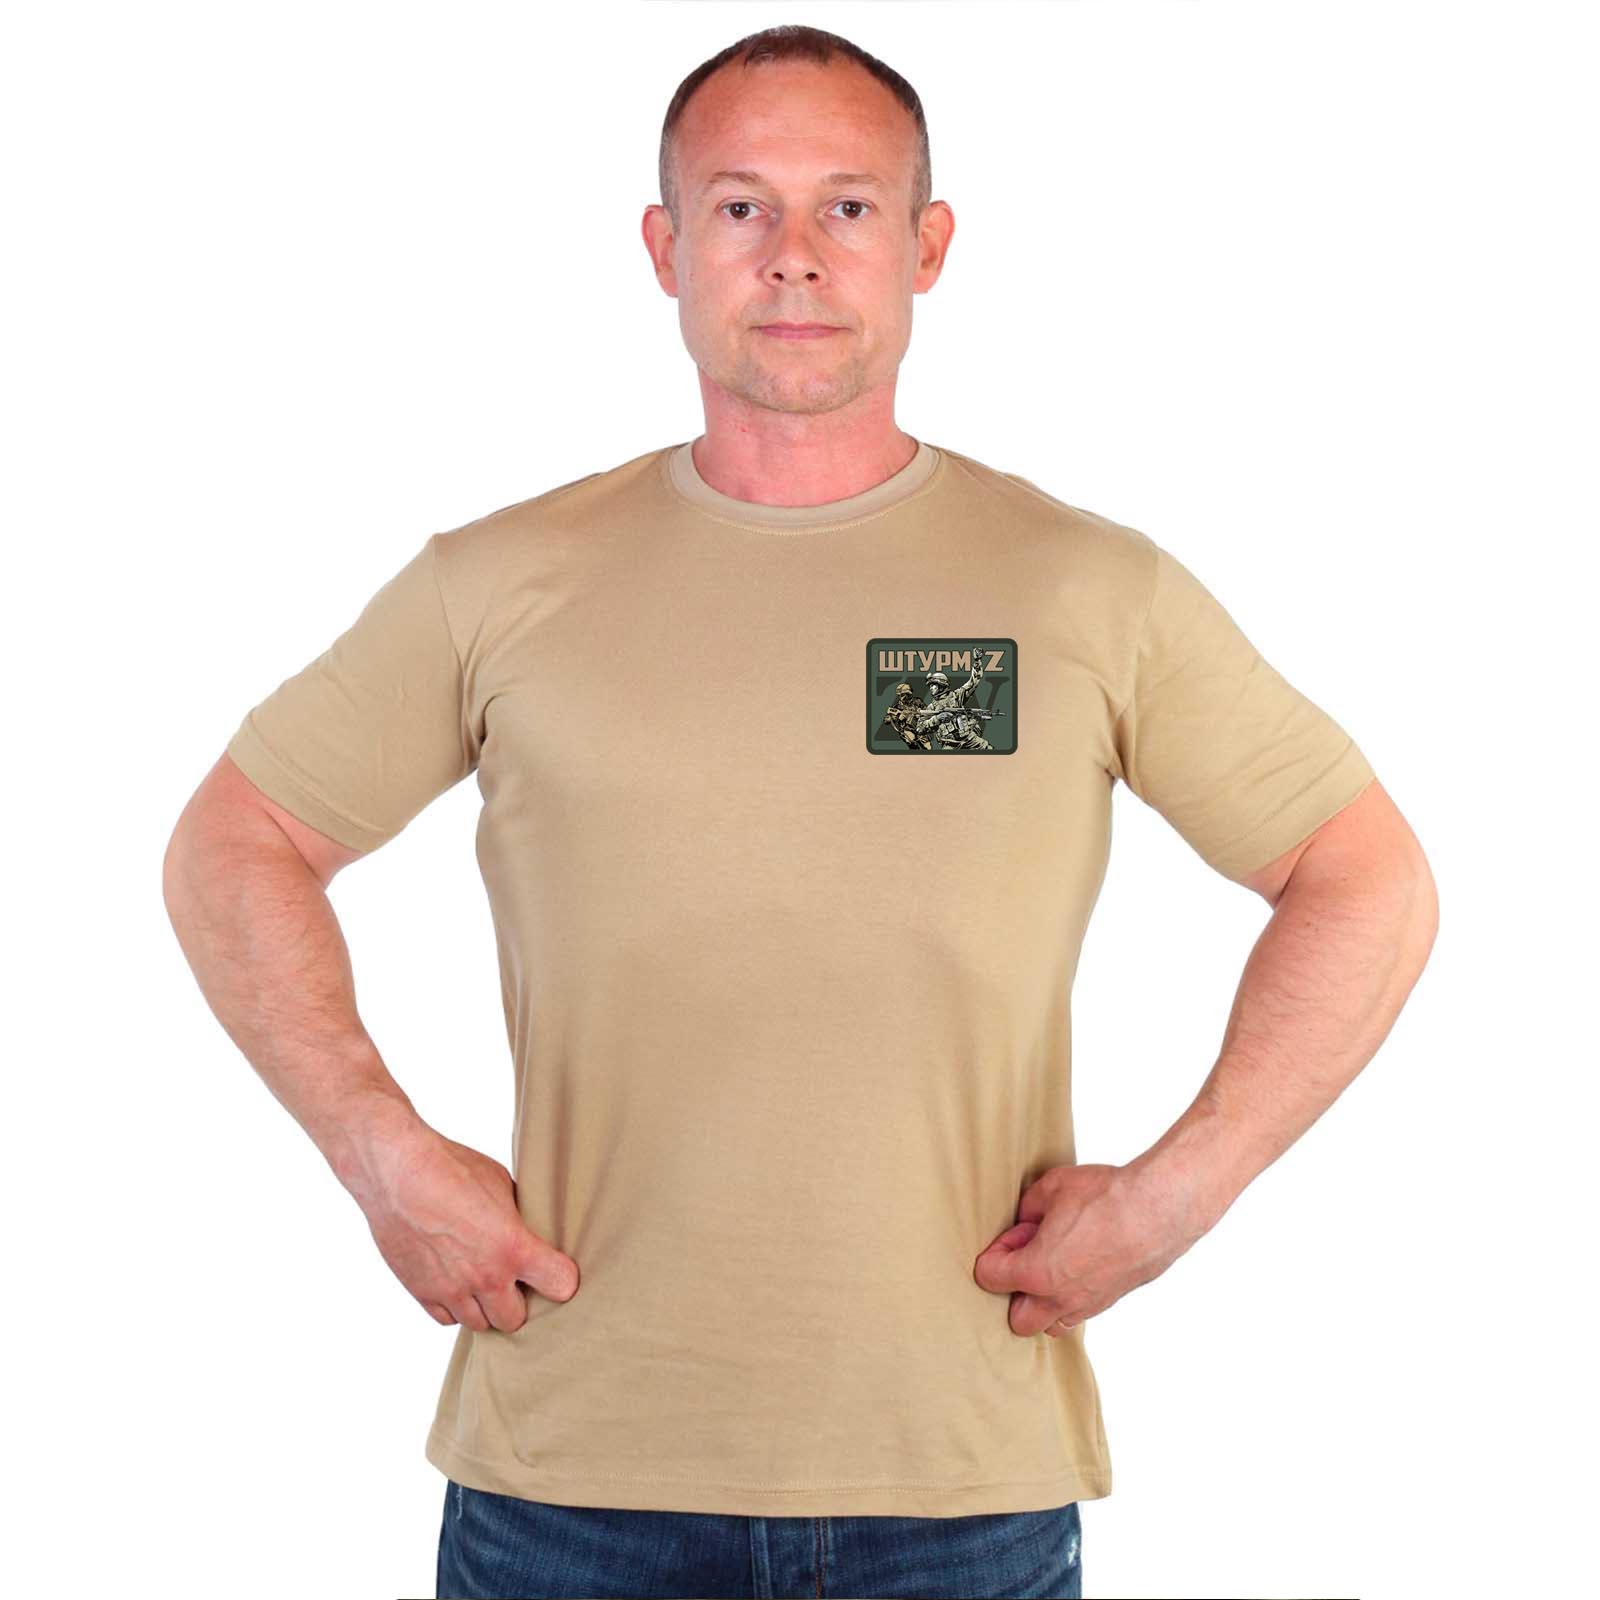 Песочная мужская футболка с трансфером ZV "Штурм"